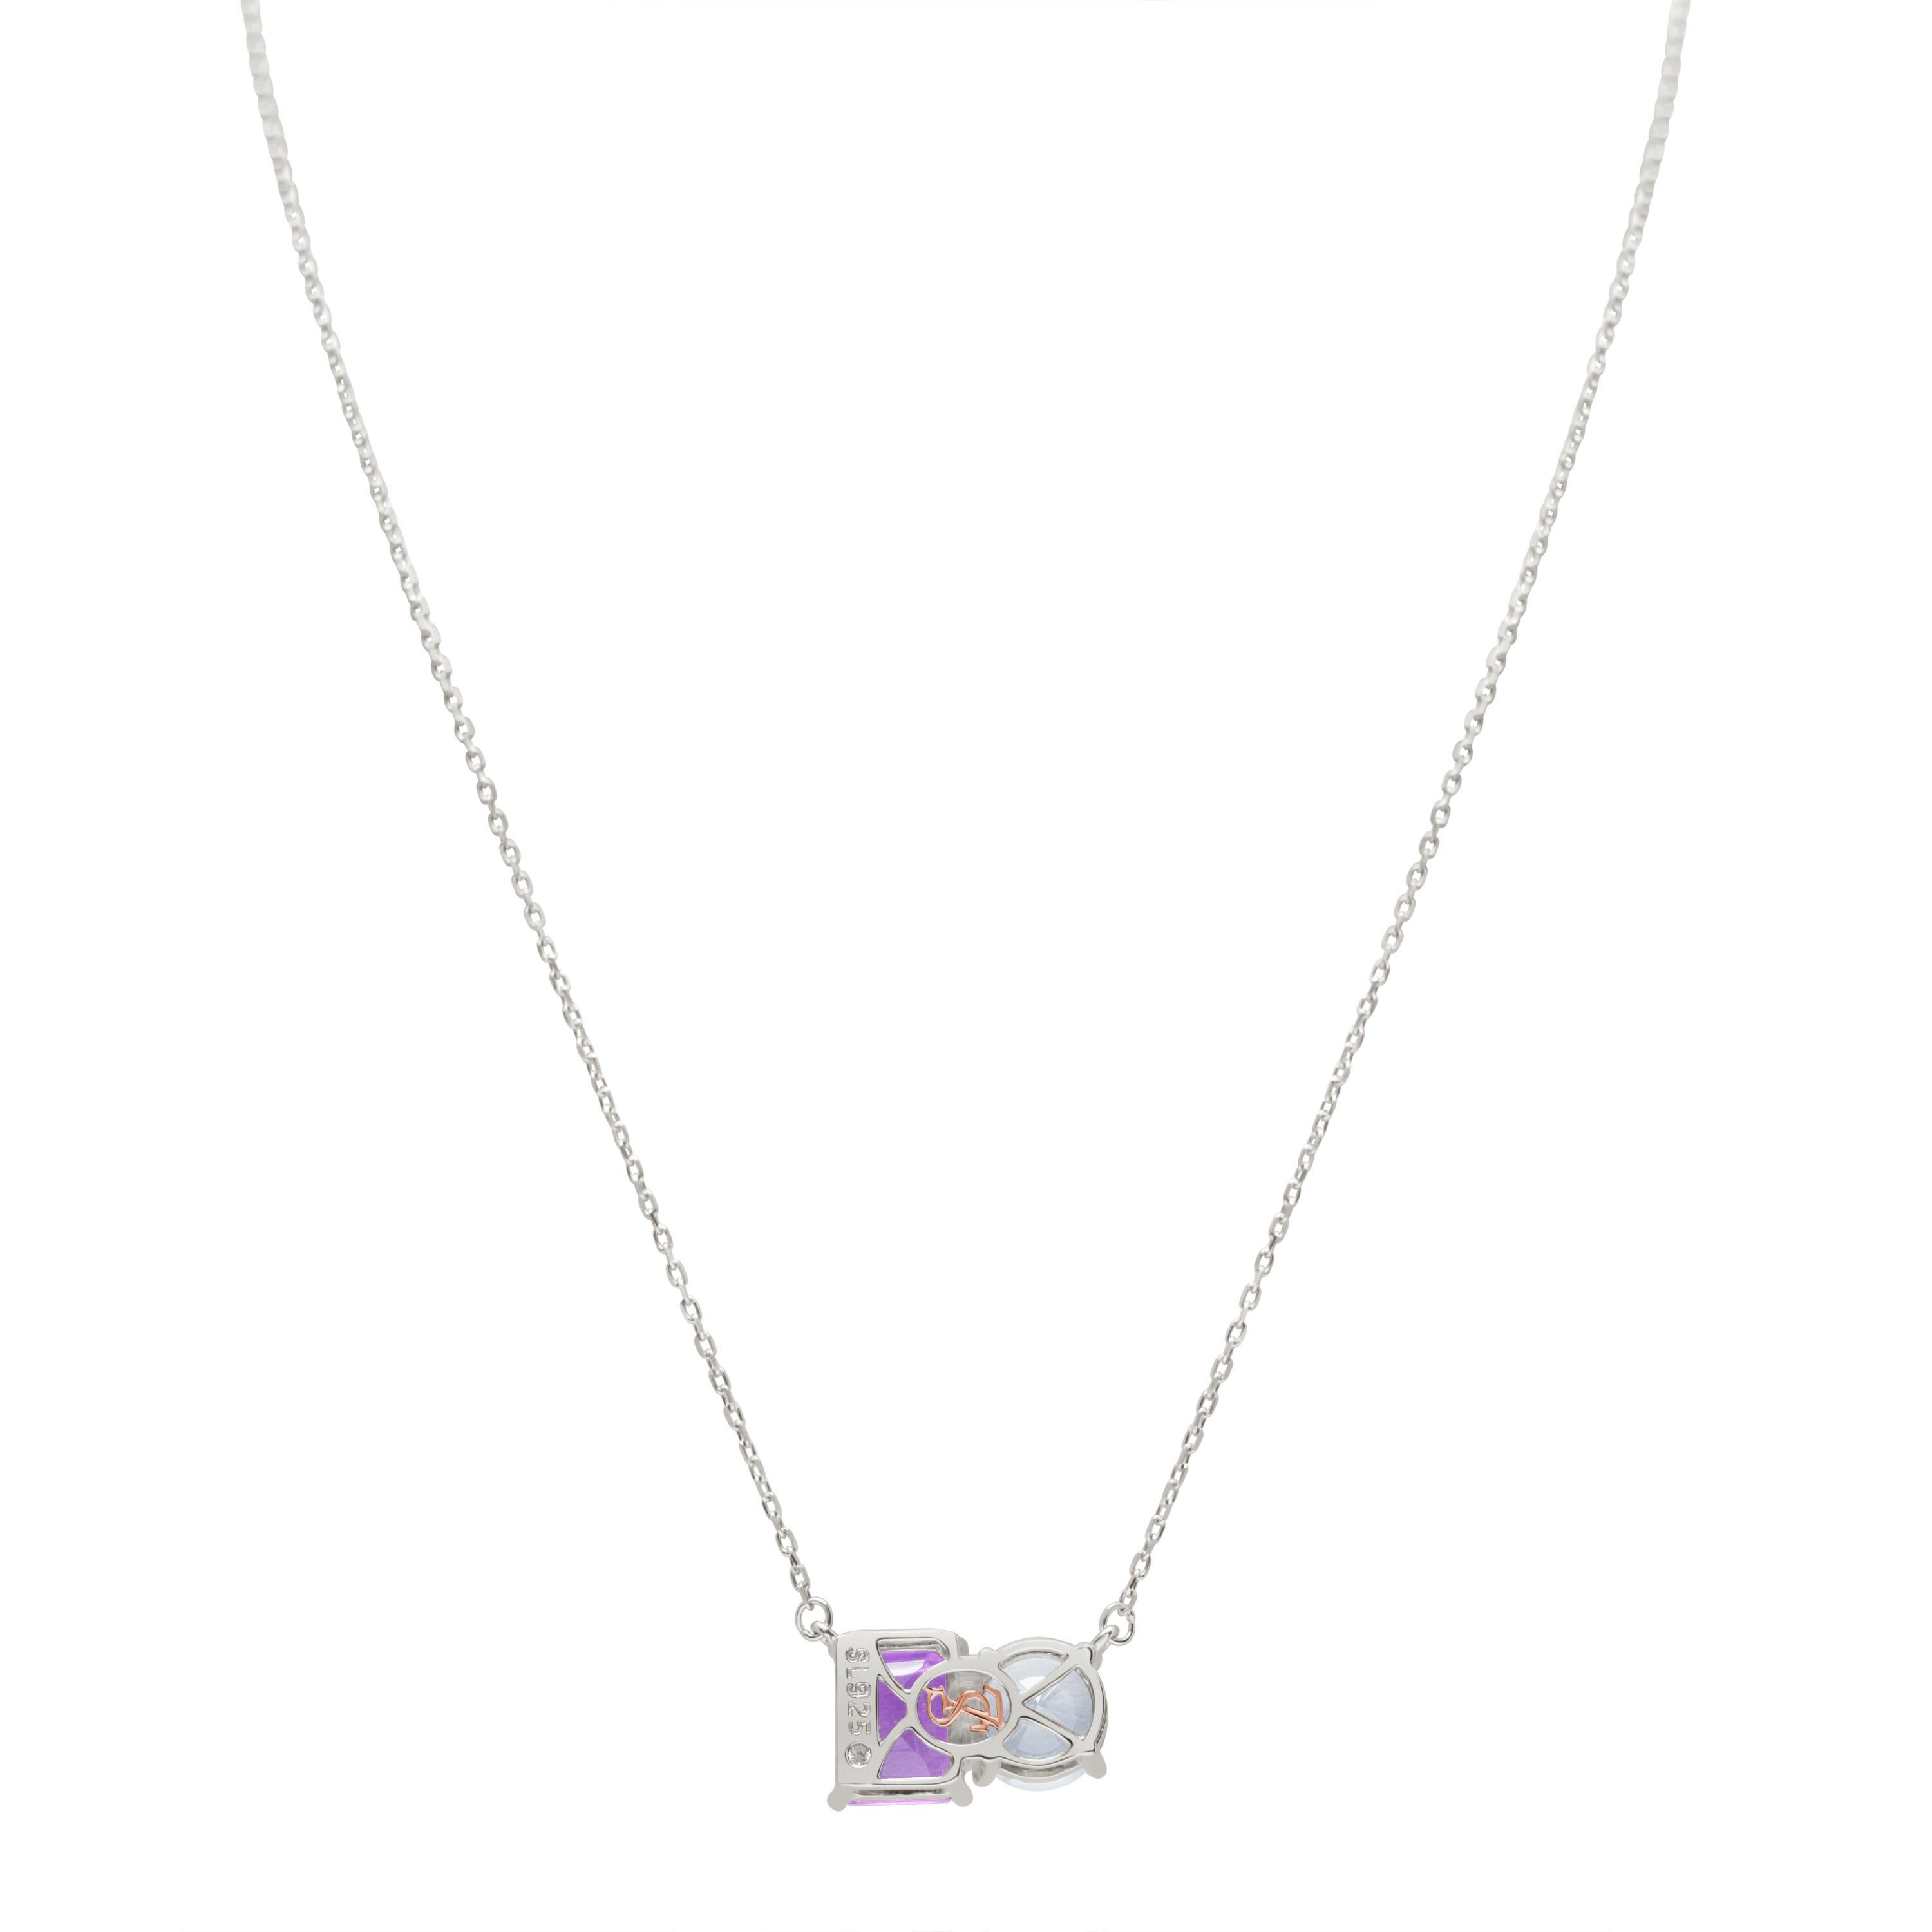 Whiting dans des tons de blanc et de violet, ce collier Suzy Levian est tout à fait dans la tendance et présente une topaze blanche de taille ronde et une améthyste violette de taille émeraude parfaitement assorties. Ce collier symbolise